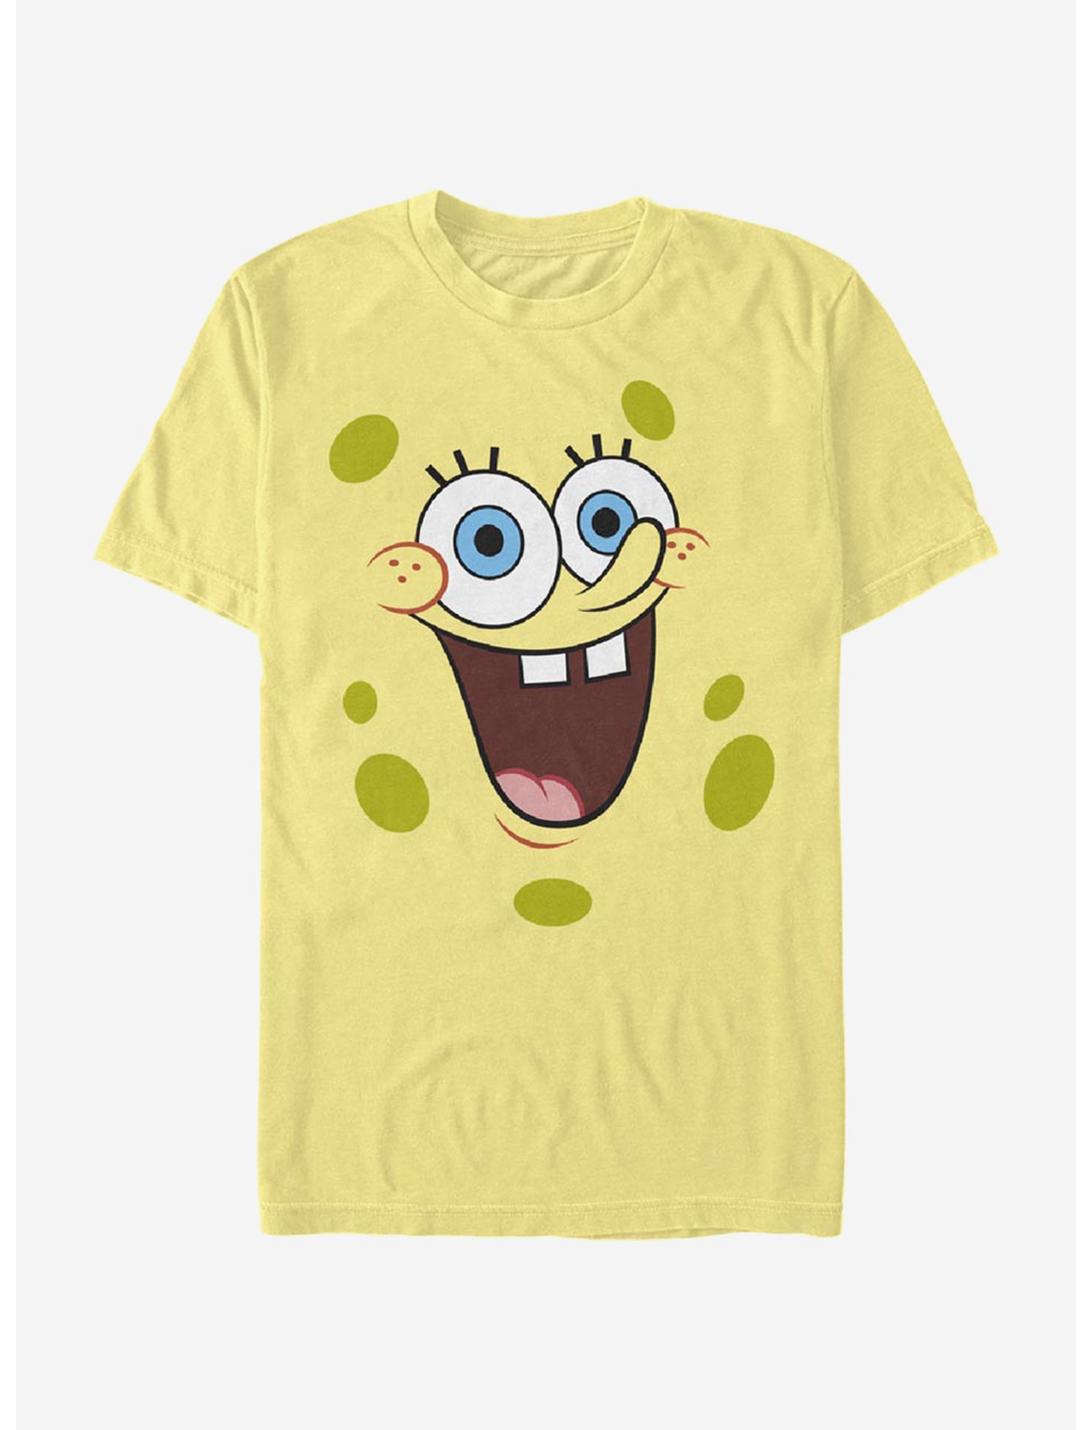 SpongeBob SquarePants Big Shiny Face T-Shirt, BANANA, hi-res